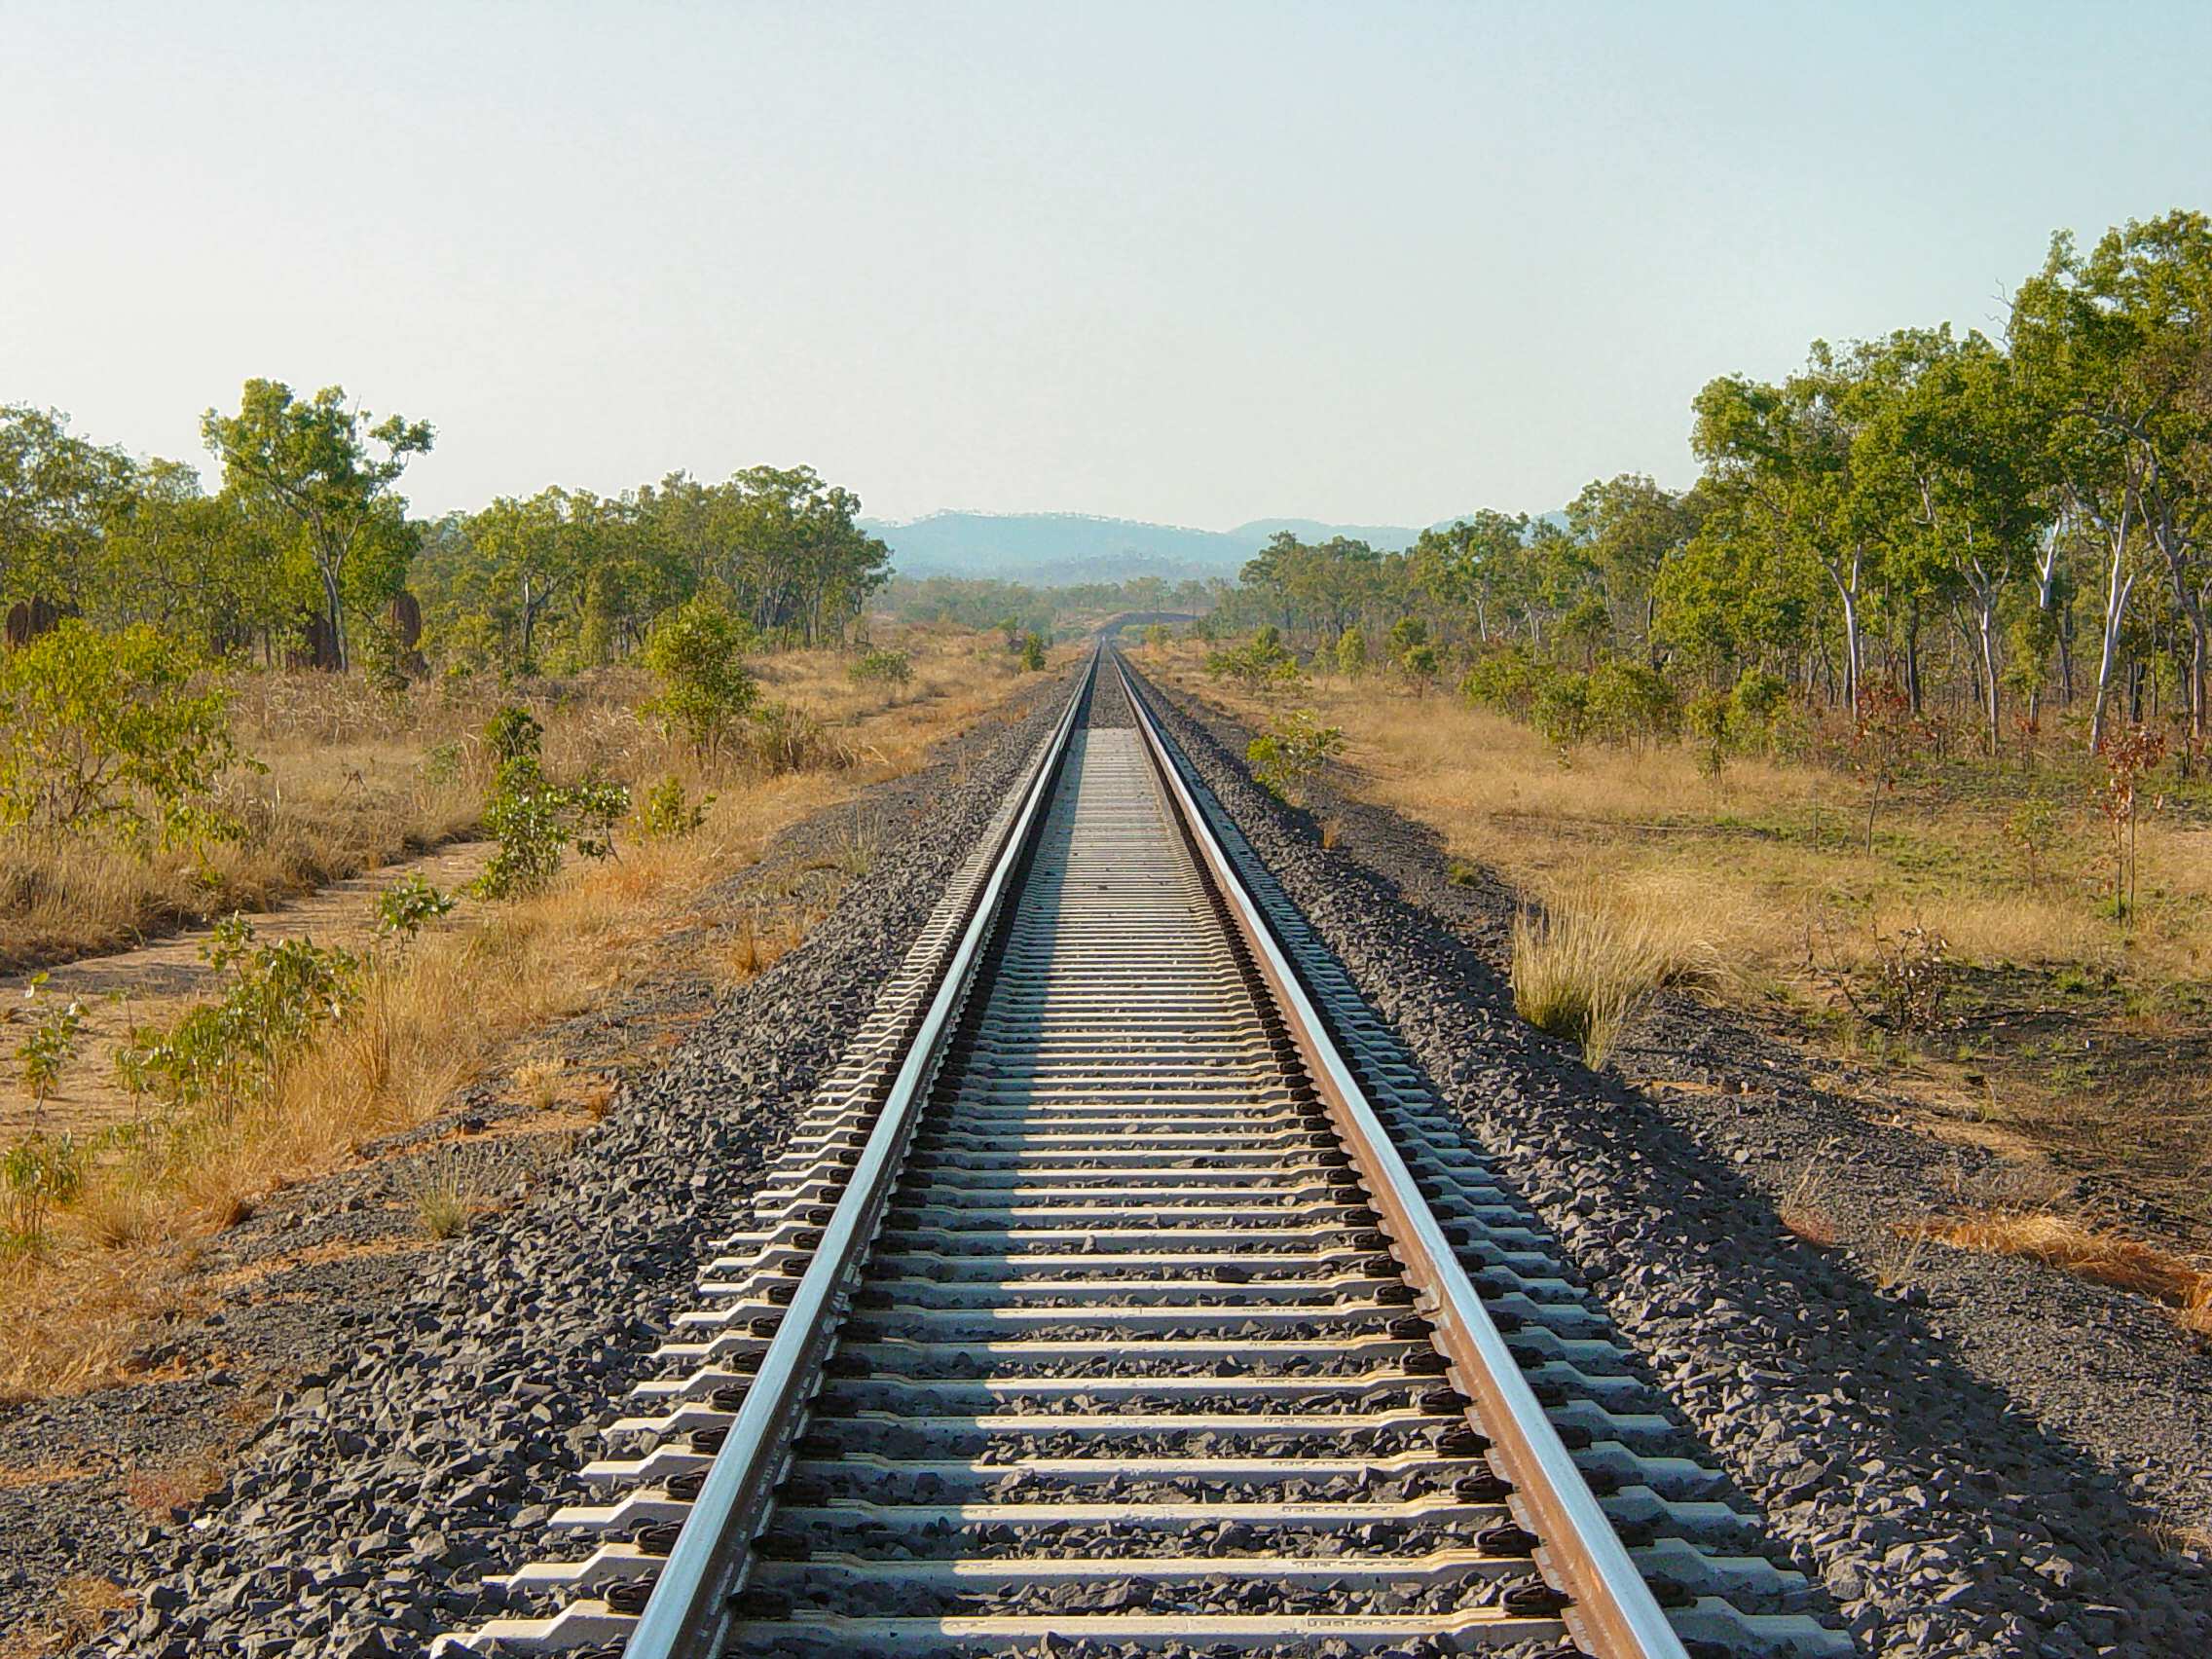 Kolwezi-Lobito Railway